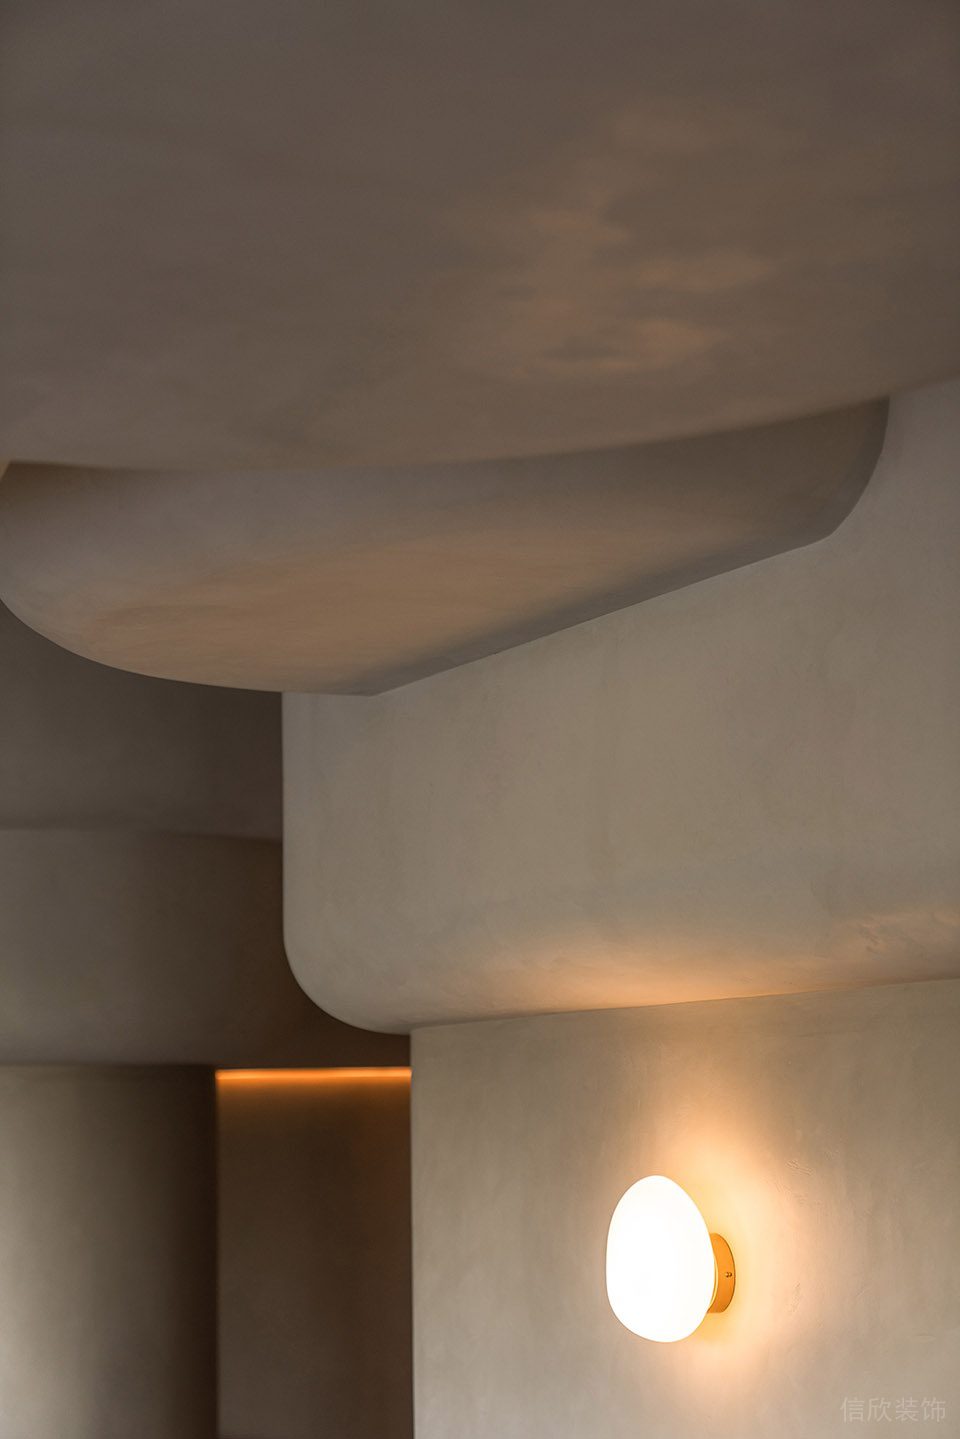 深圳南山洞穴造型餐厅圆形壁灯装修设计